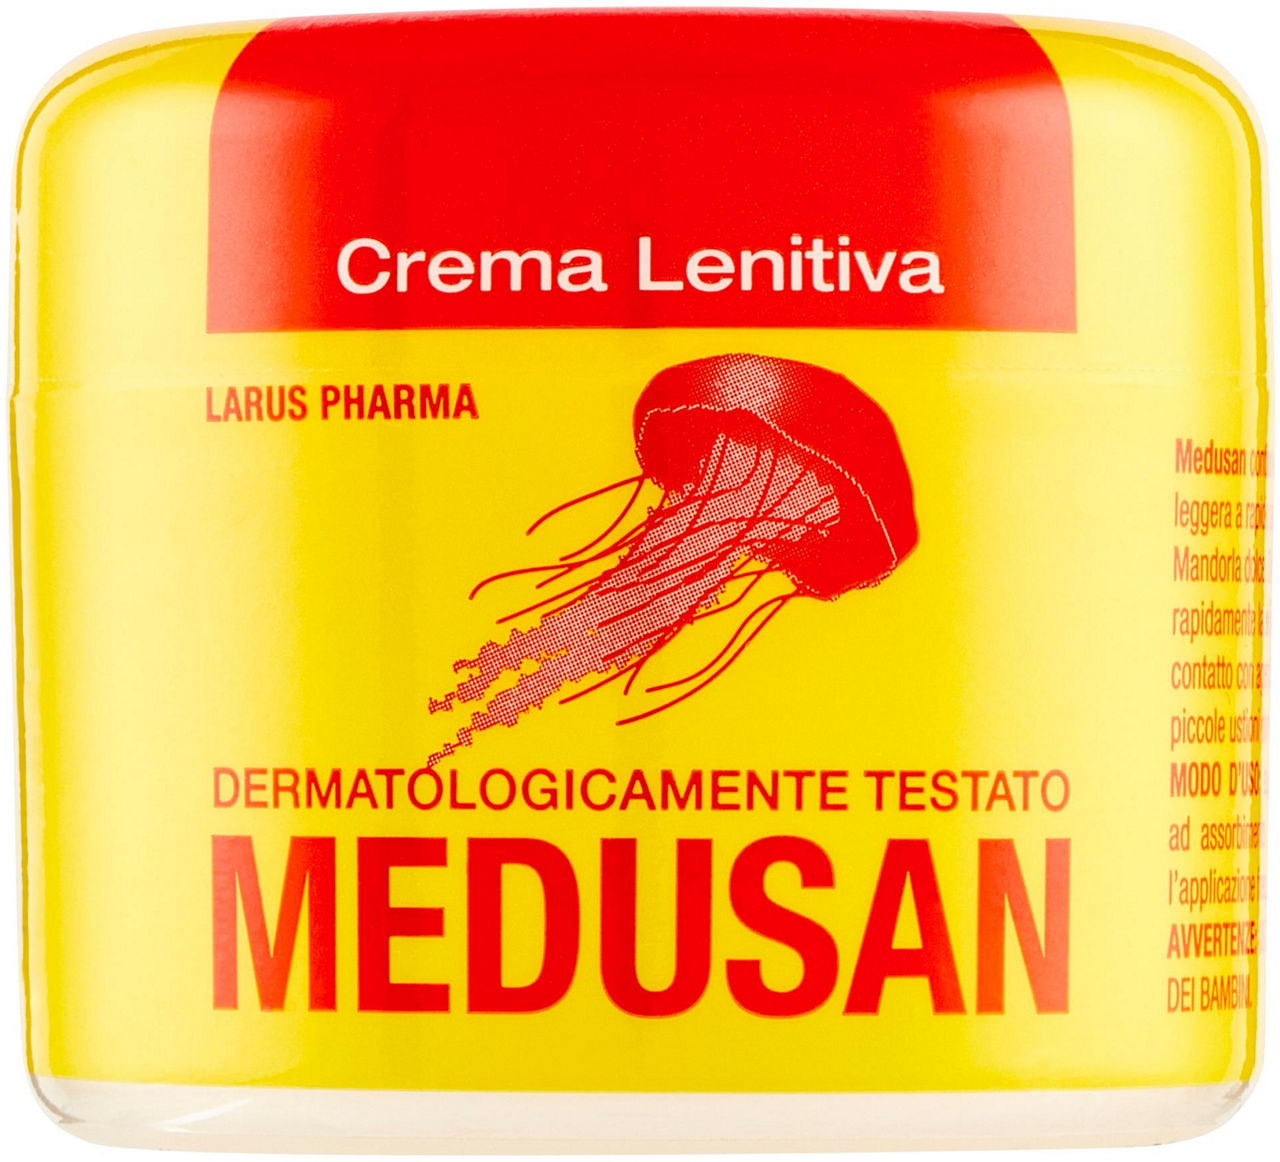 Antiurticante medusan crema lenitiva barattolo ml50